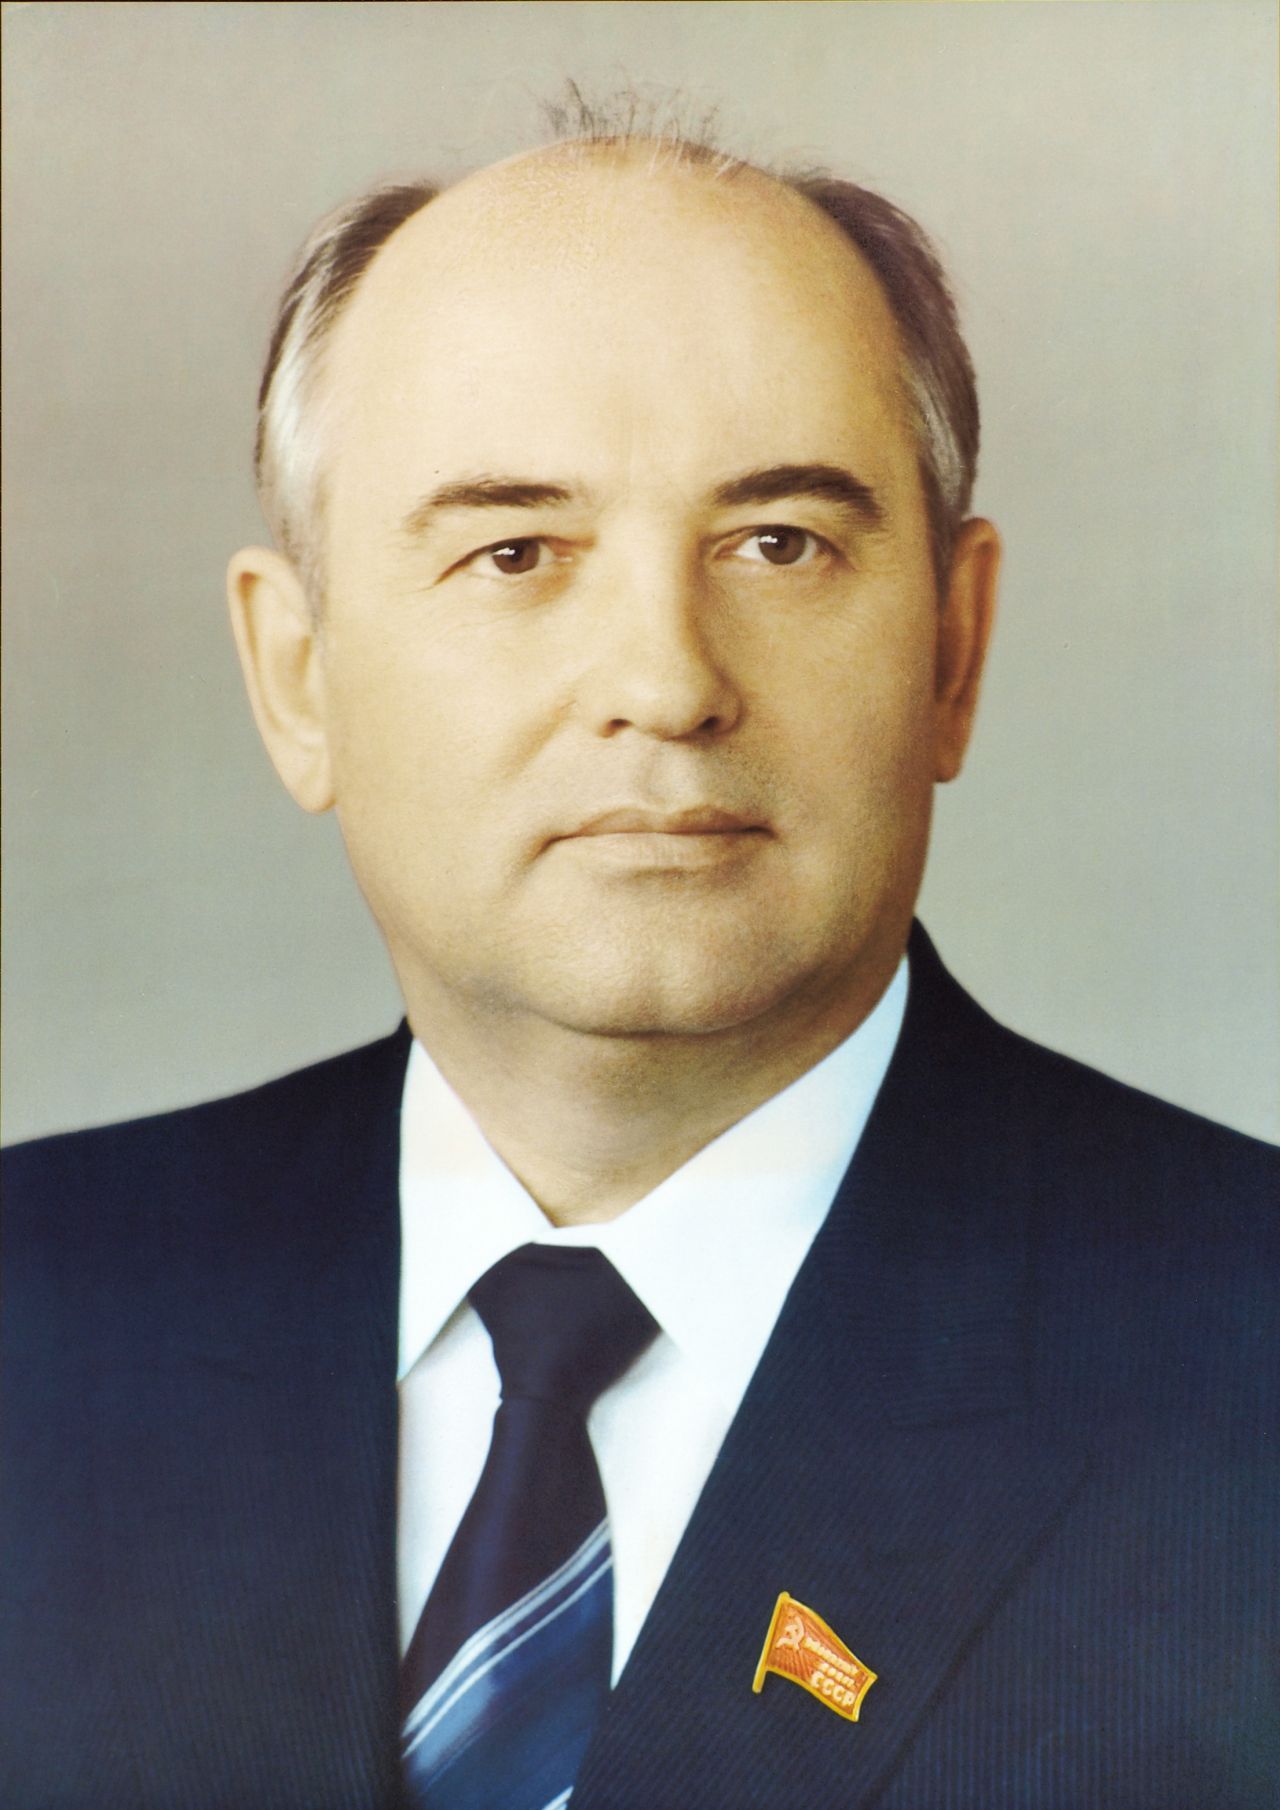 Porträtplakat von Michail Gorbatschow, Generalsekretär der KPdSU (1985-1991) und Staatsoberhaupt der Sowjetunion (1988–1991), 1980er Jahre.